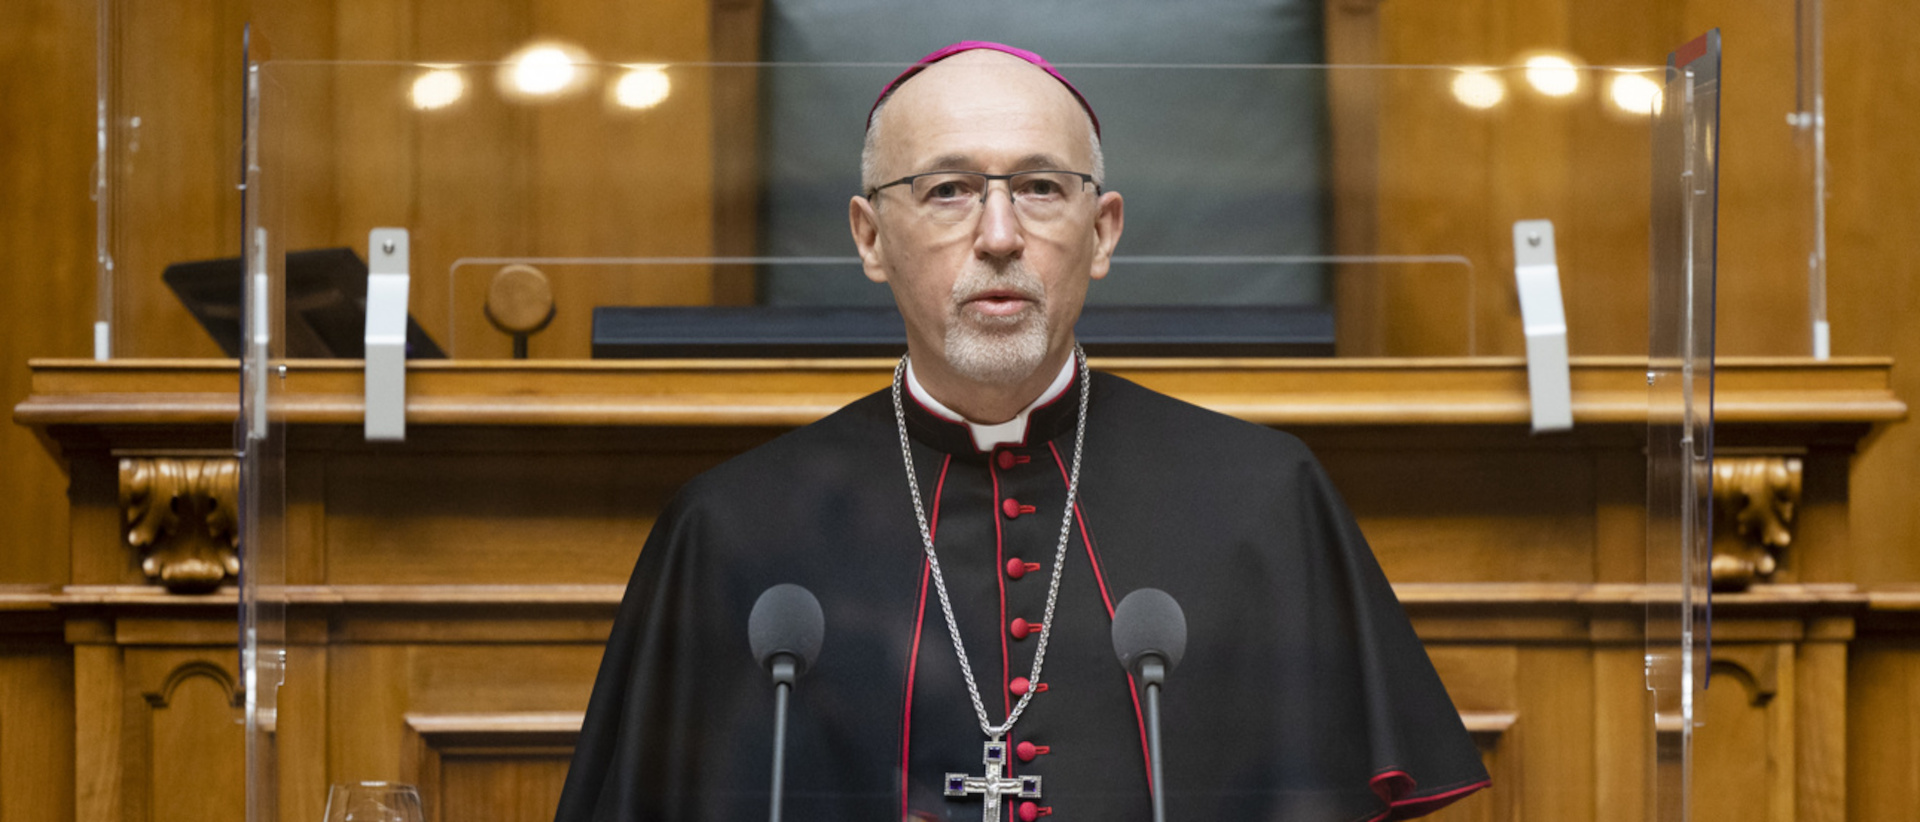 Martin Krebs, Apostolischer Nuntius, am Neujahrsempfang 2022